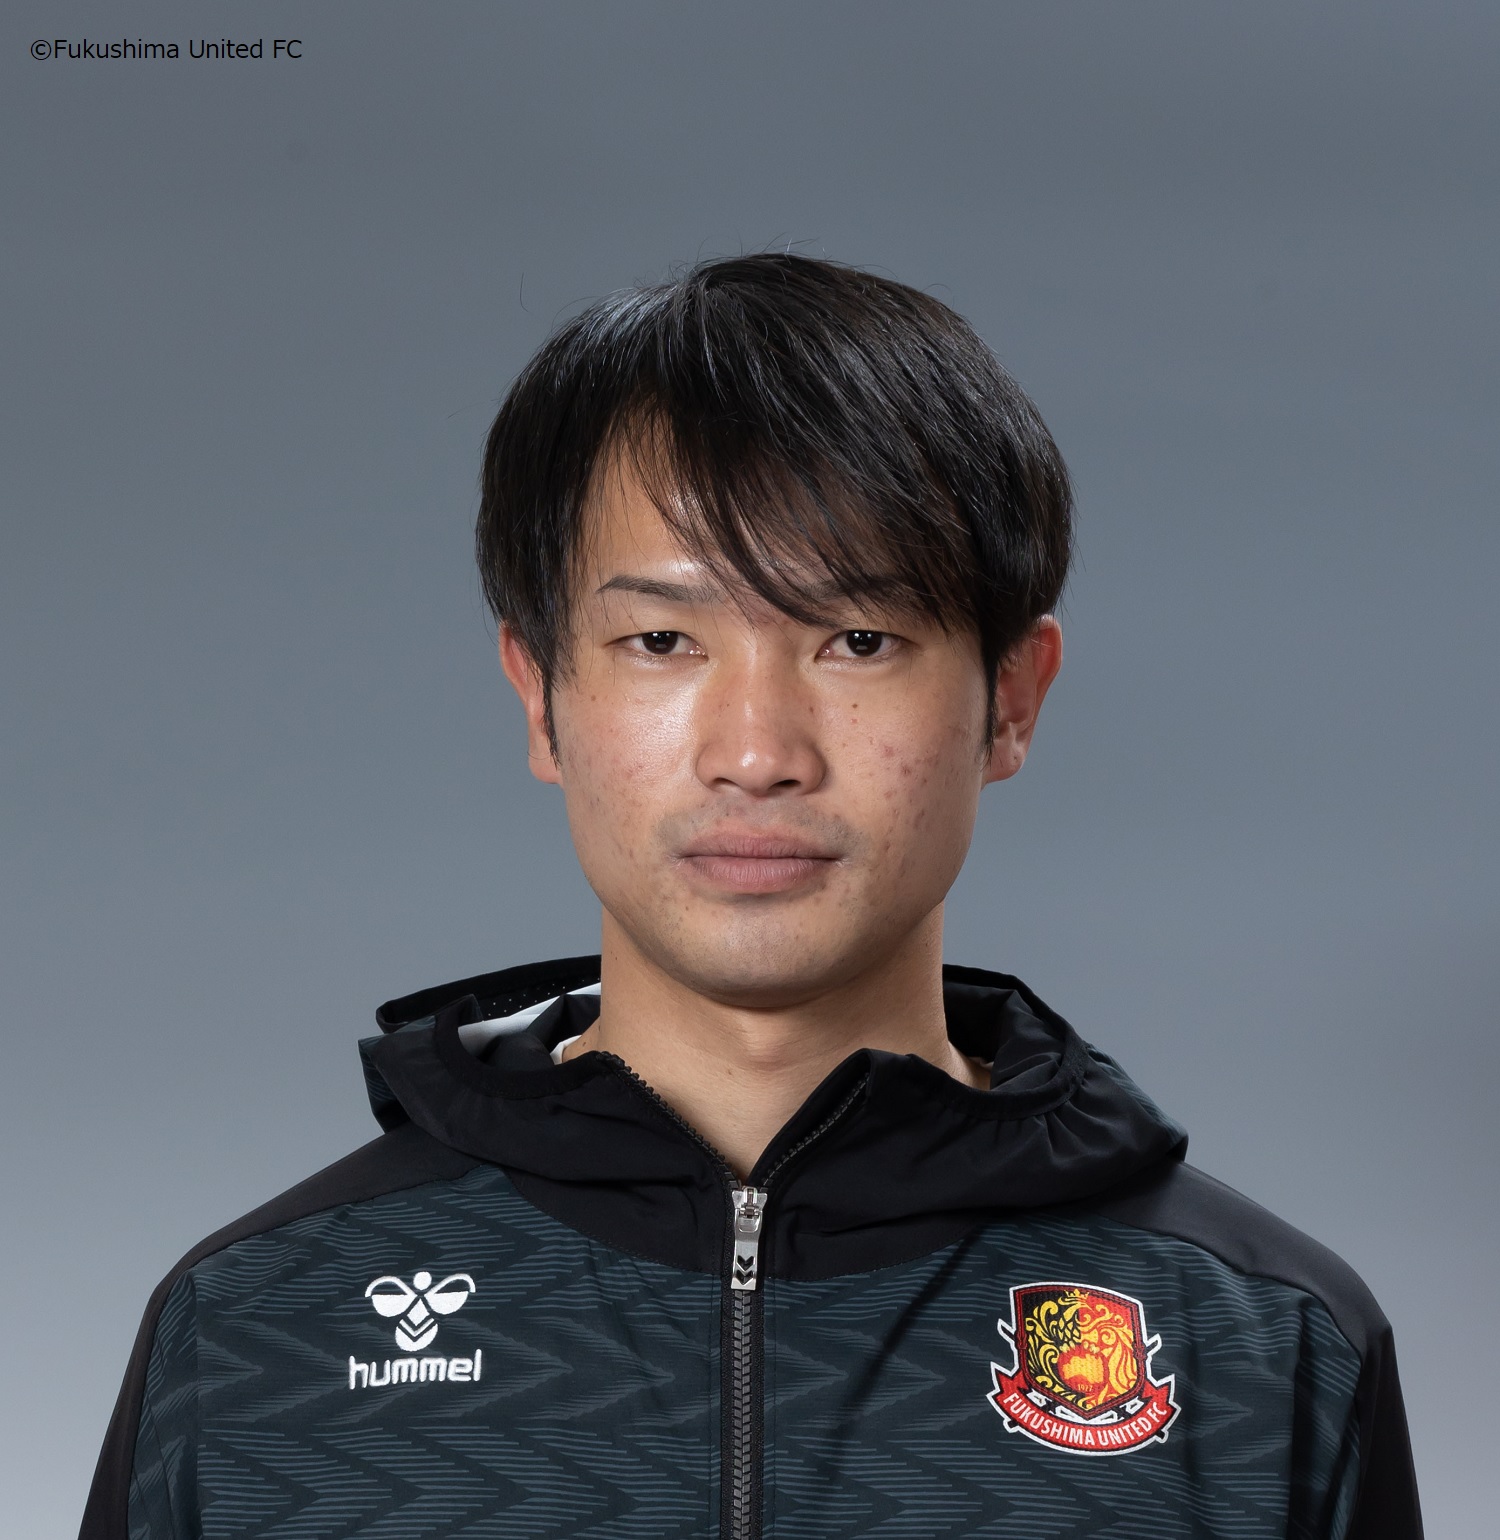 阪本 匠馬 フィジカルコーチ 退任のお知らせ 福島ユナイテッドfc 公式サイト Fukushima United Fc Official Website